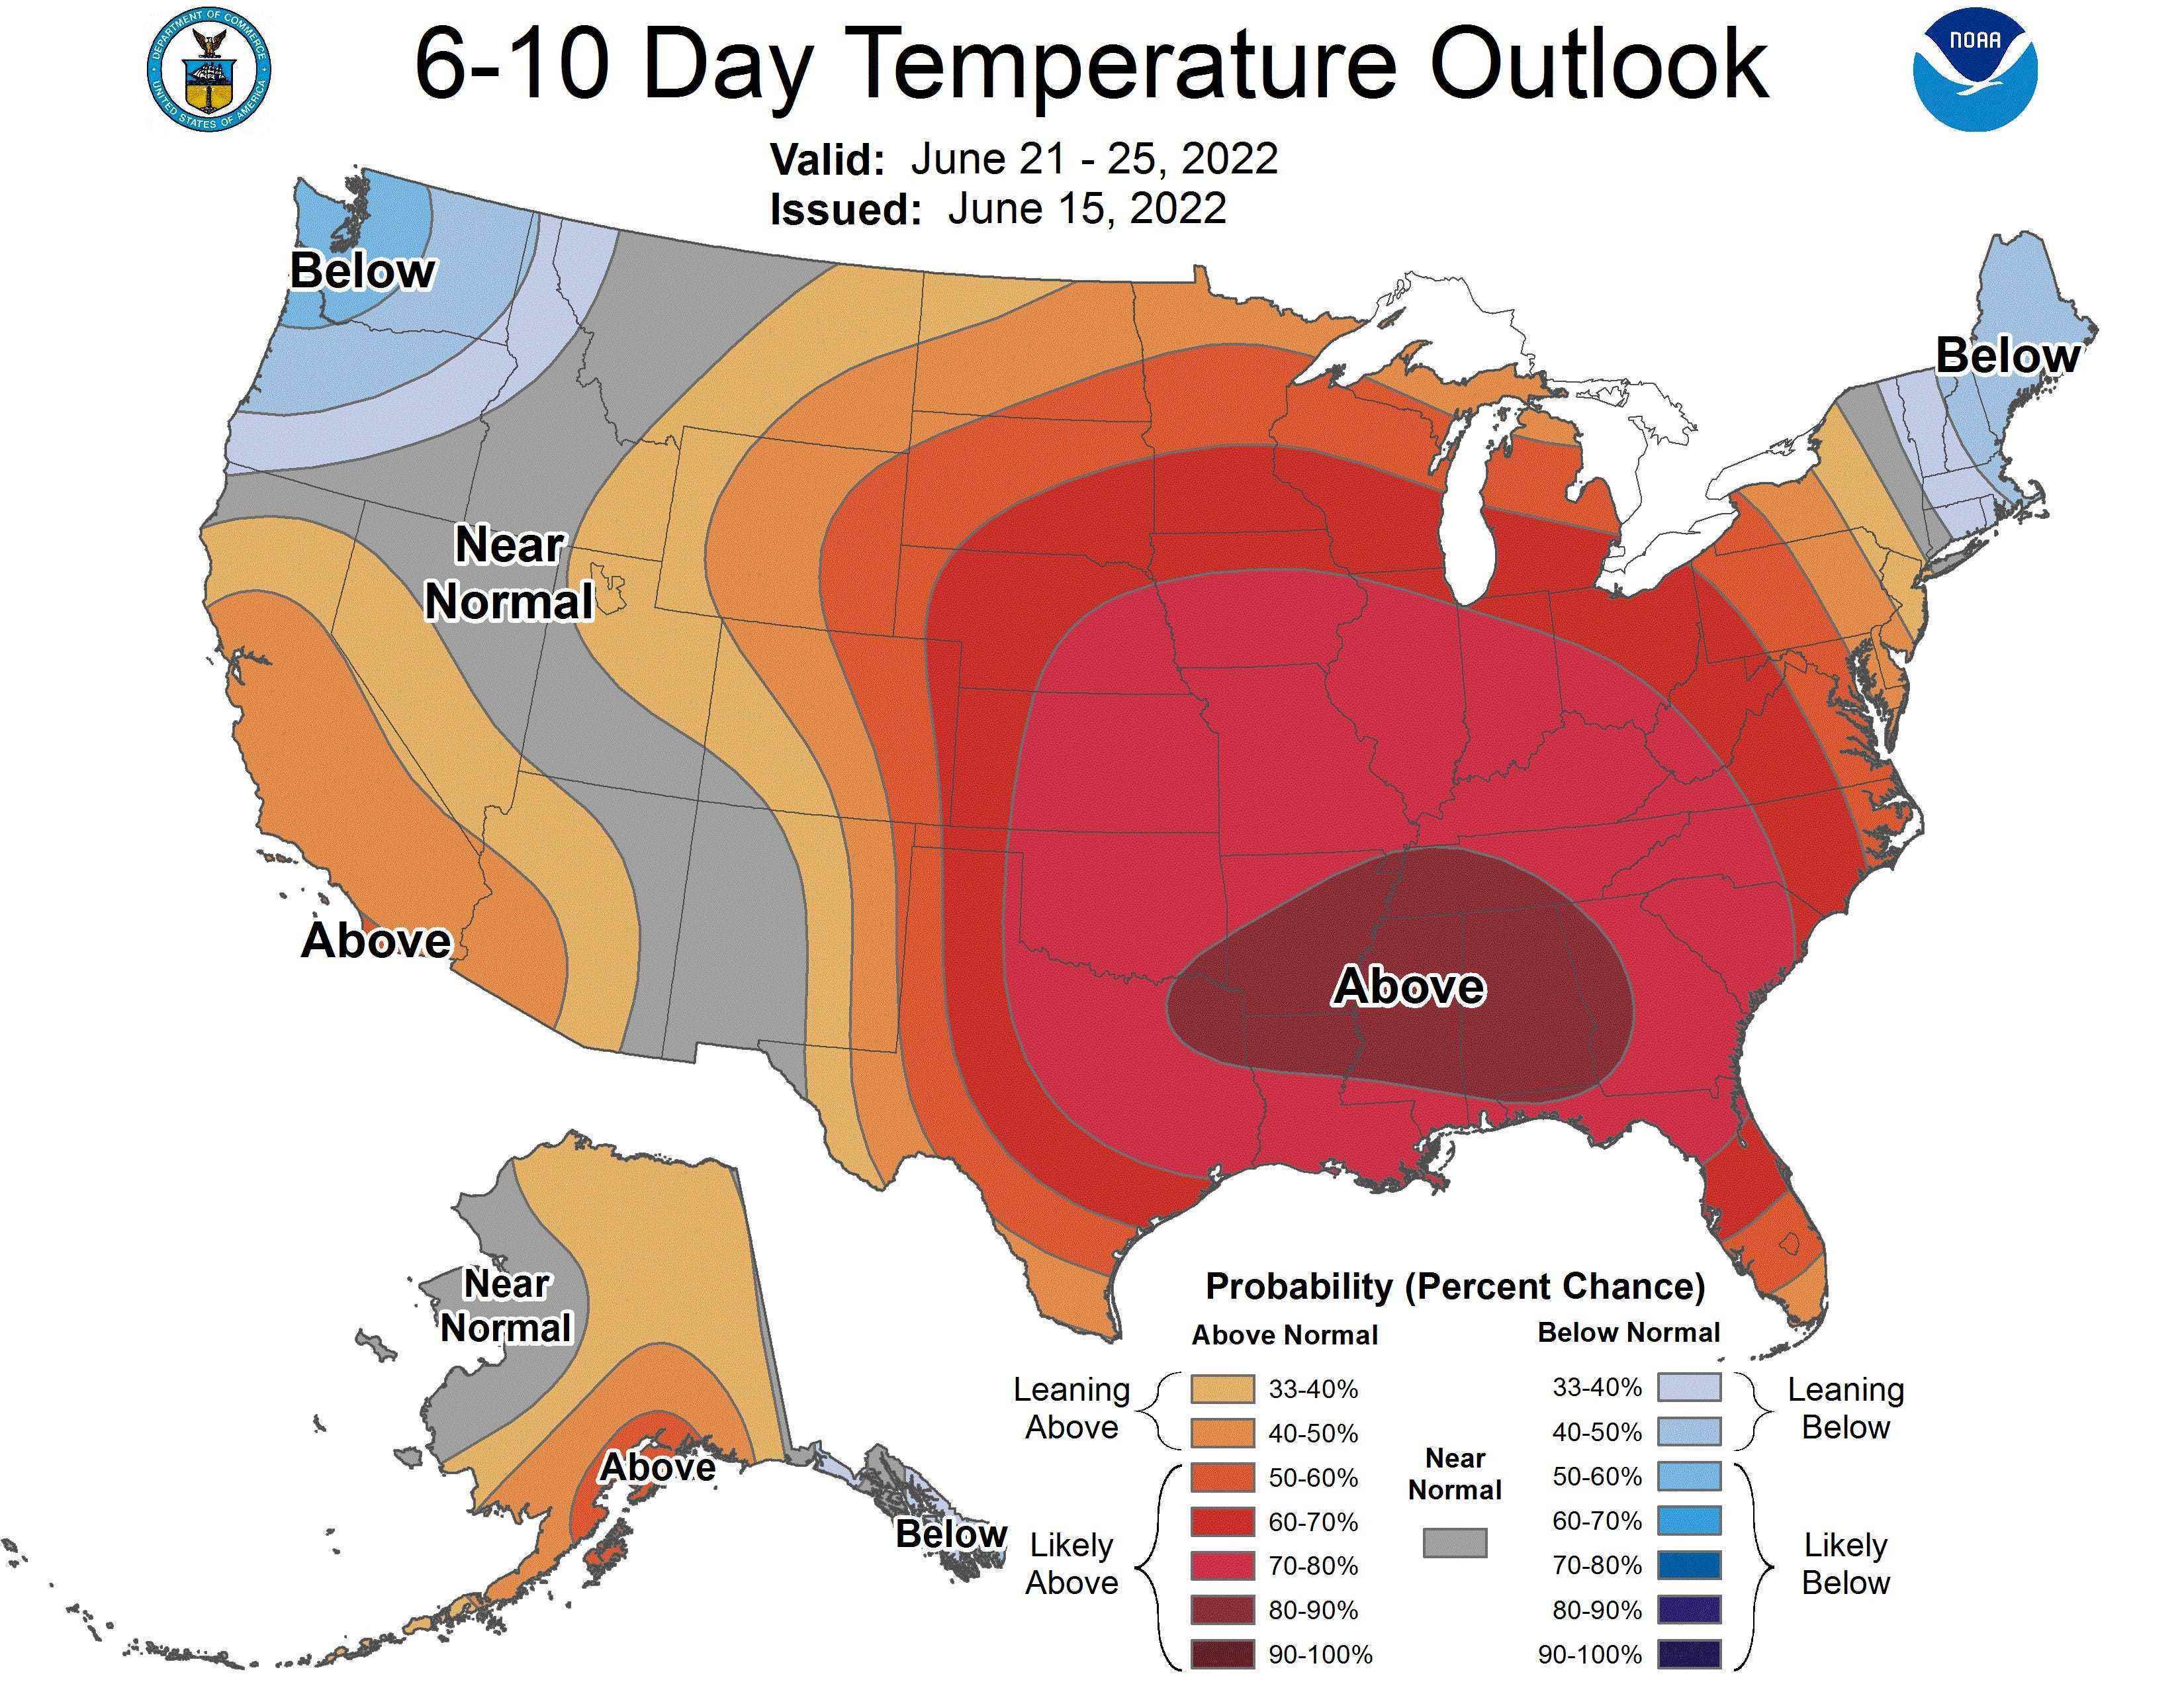 Der einwöchige Ausblick der US-Heatmap zeigt tiefrote überdurchschnittliche Temperaturen in den zentralen und östlichen Regionen